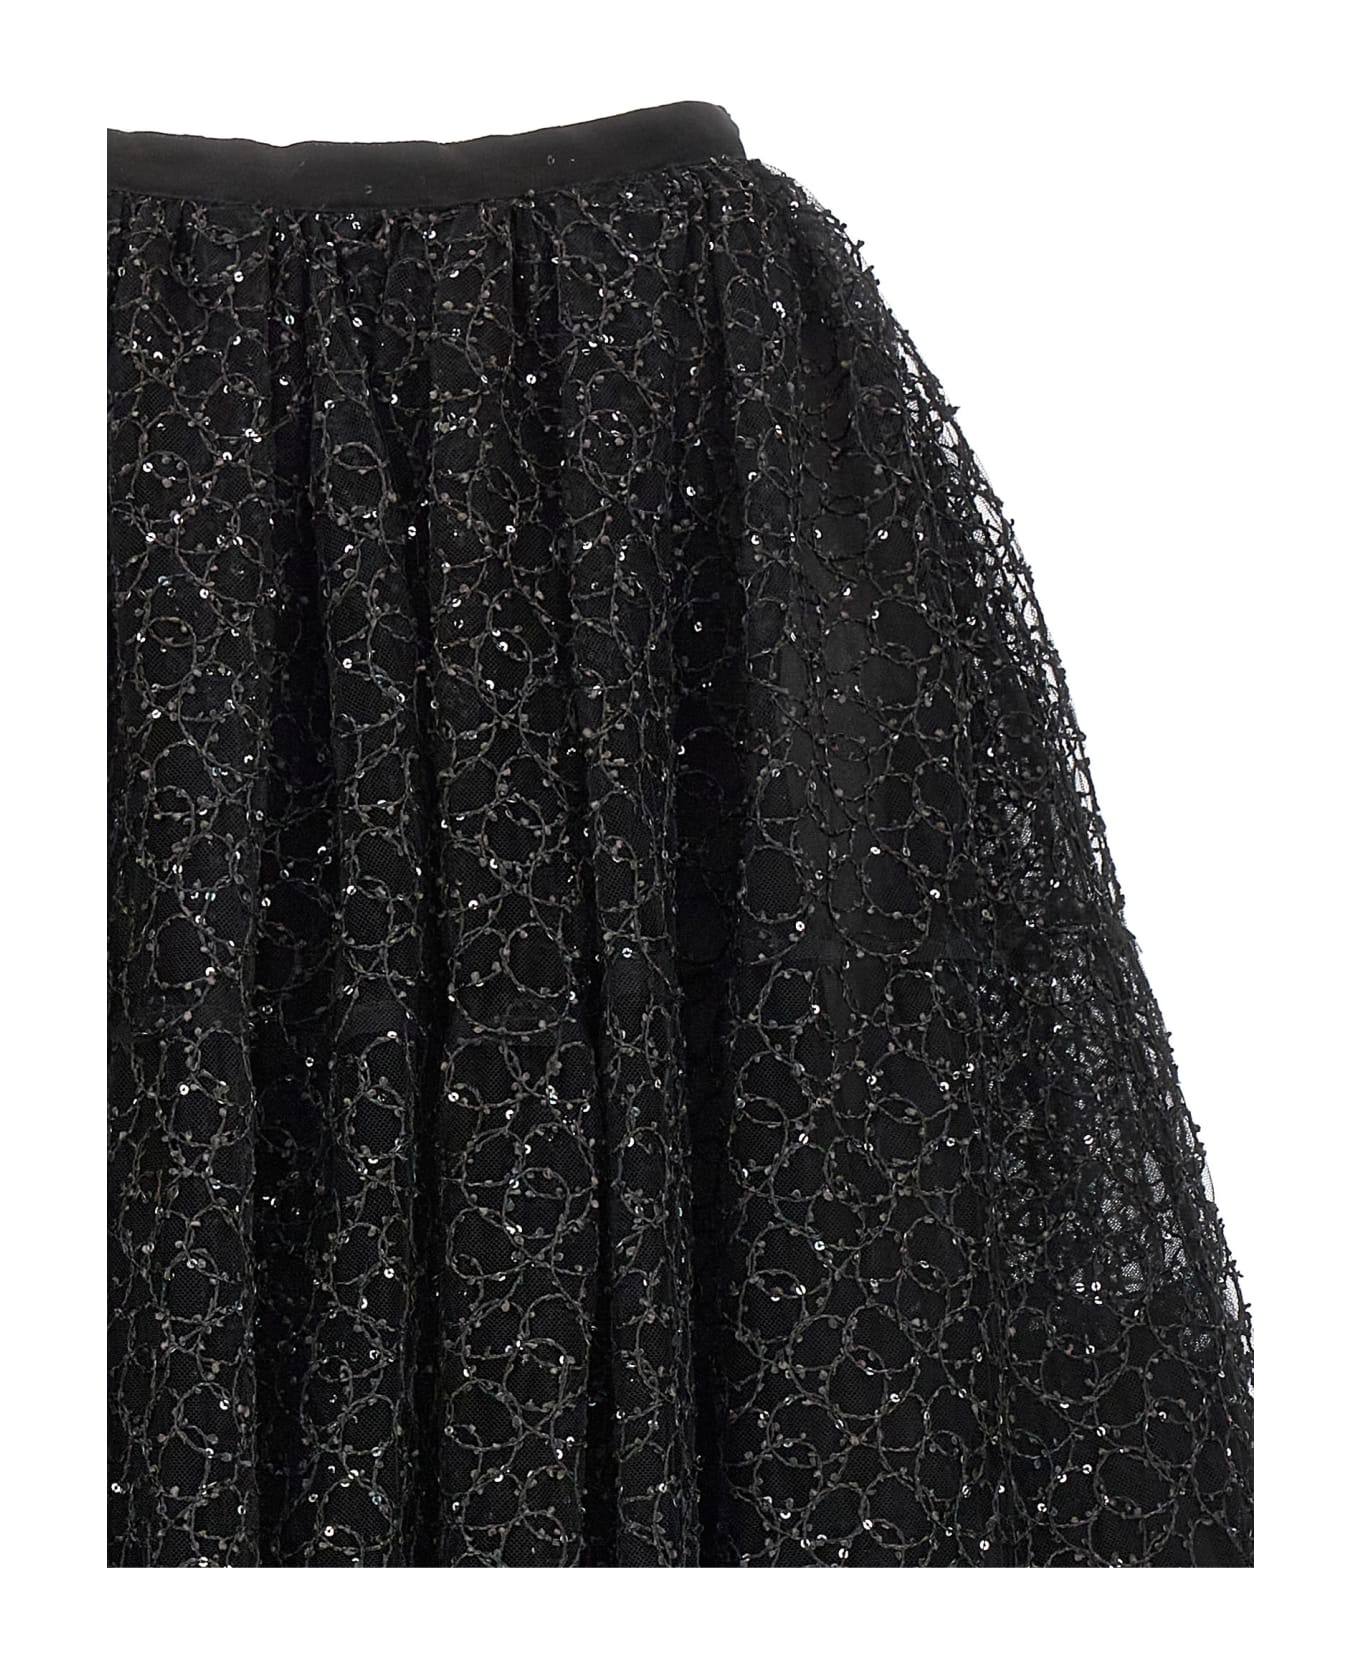 Giambattista Valli Embroidered Tulle Skirt - Black   スカート